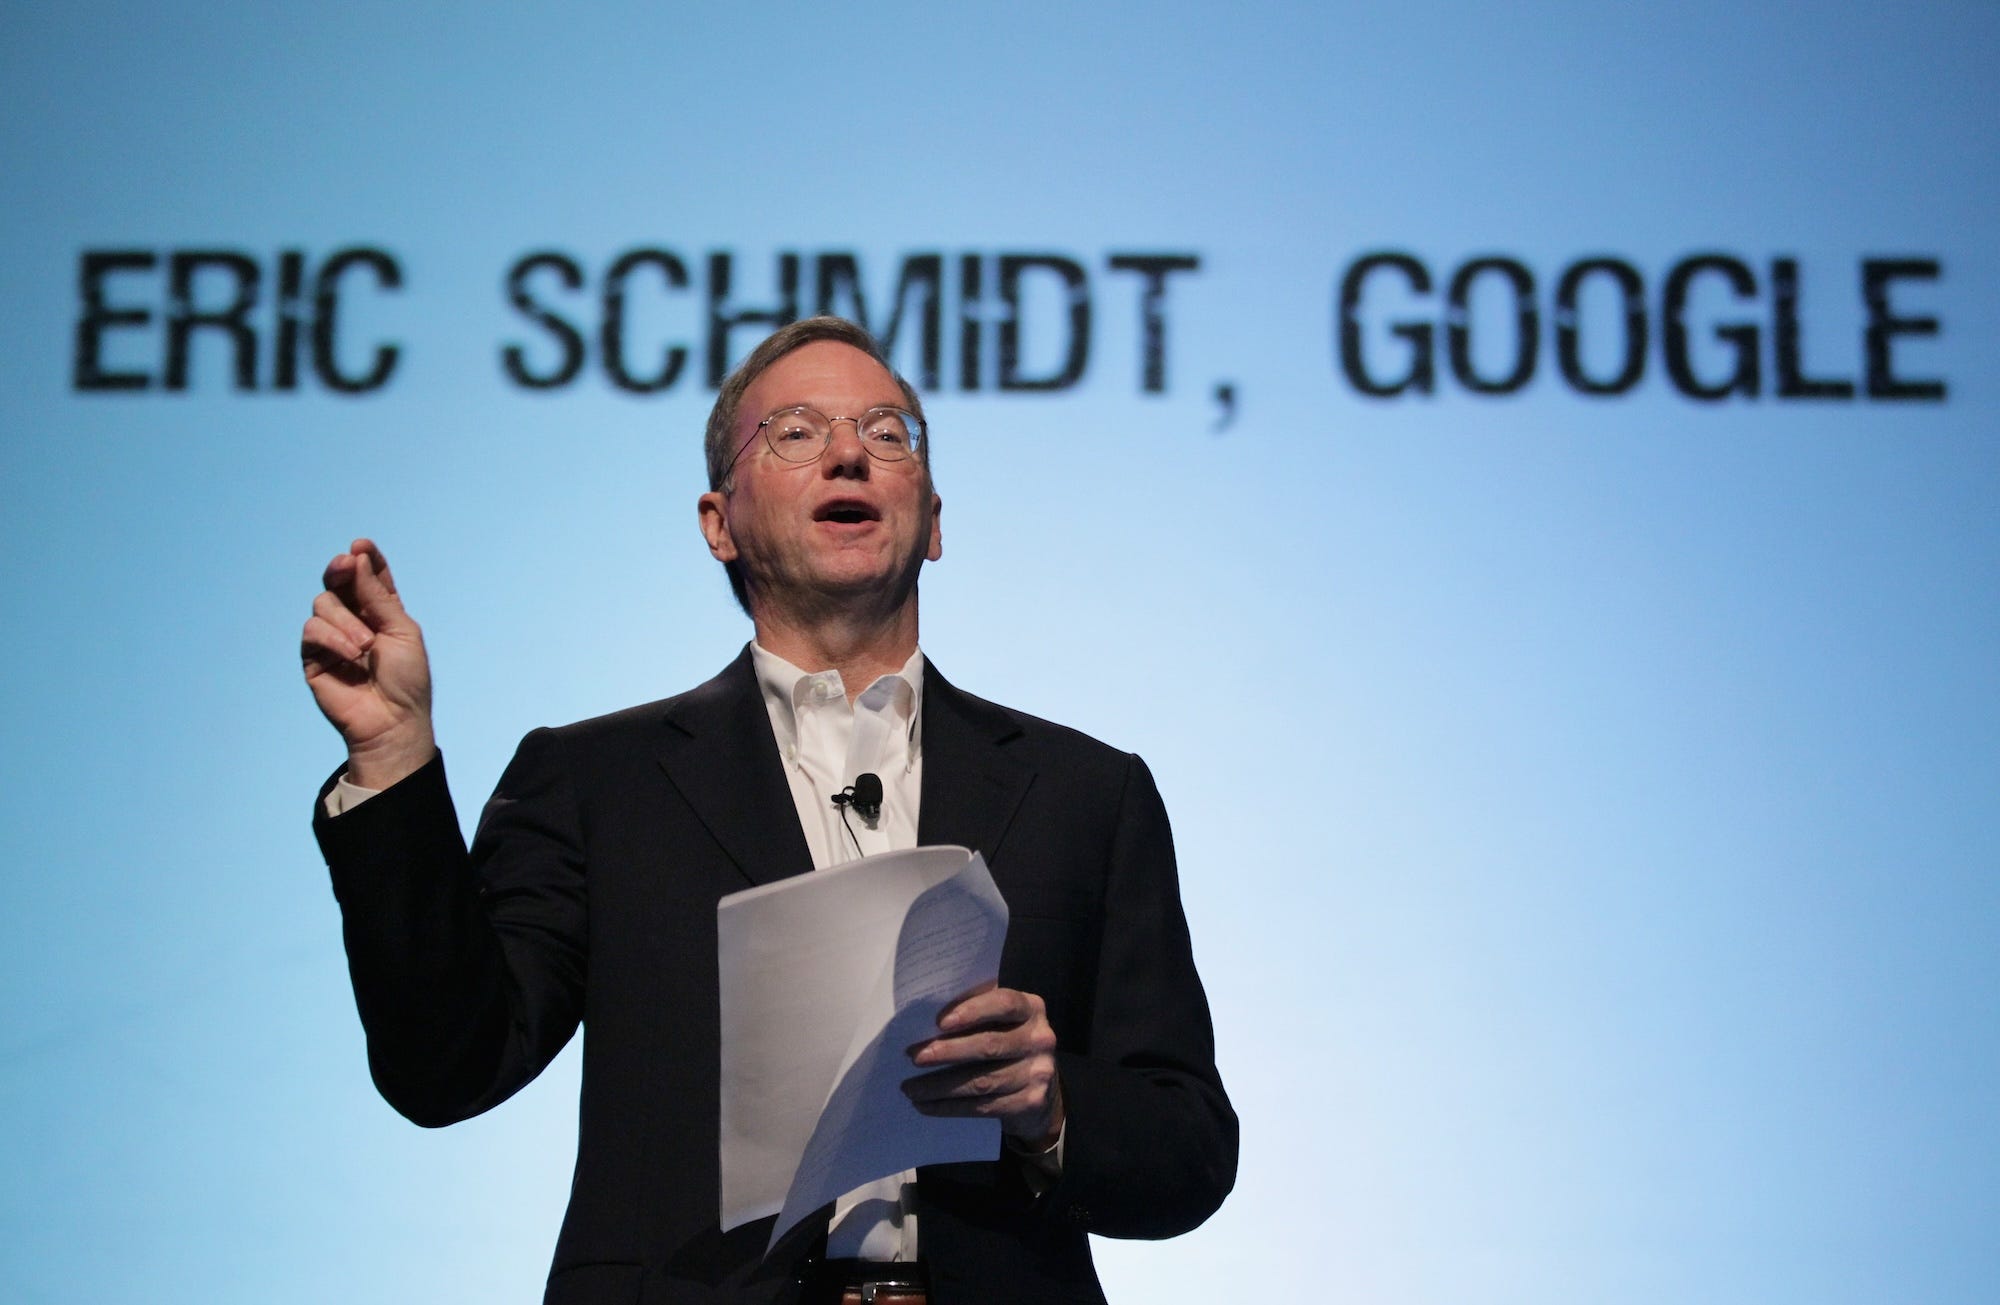 Der ehemalige Google-Chef Eric Schmidt spricht vor einer Kulisse mit seinem Namen.